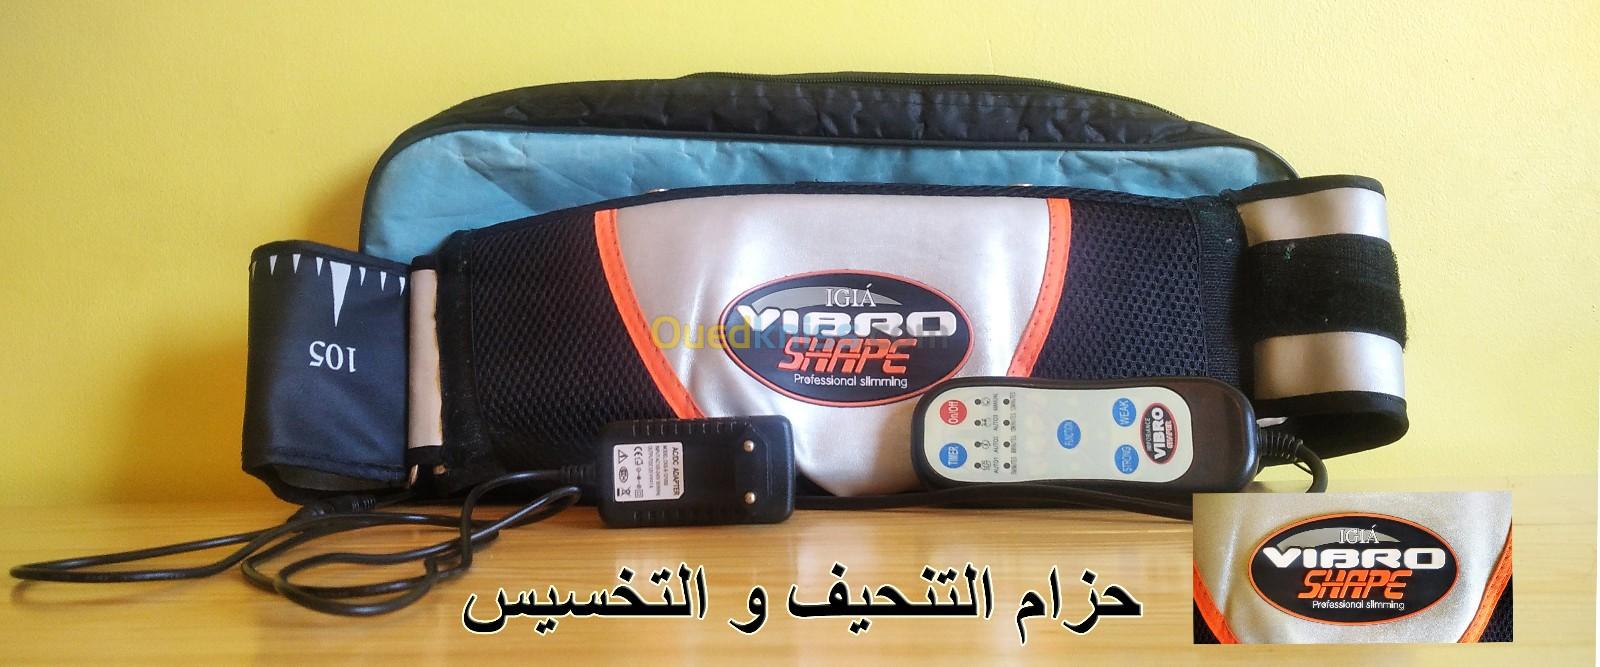 la ceinture médicale pour briser les graisses VIBRO SHAPE  حزام التنحيف من فيبرو شيب  